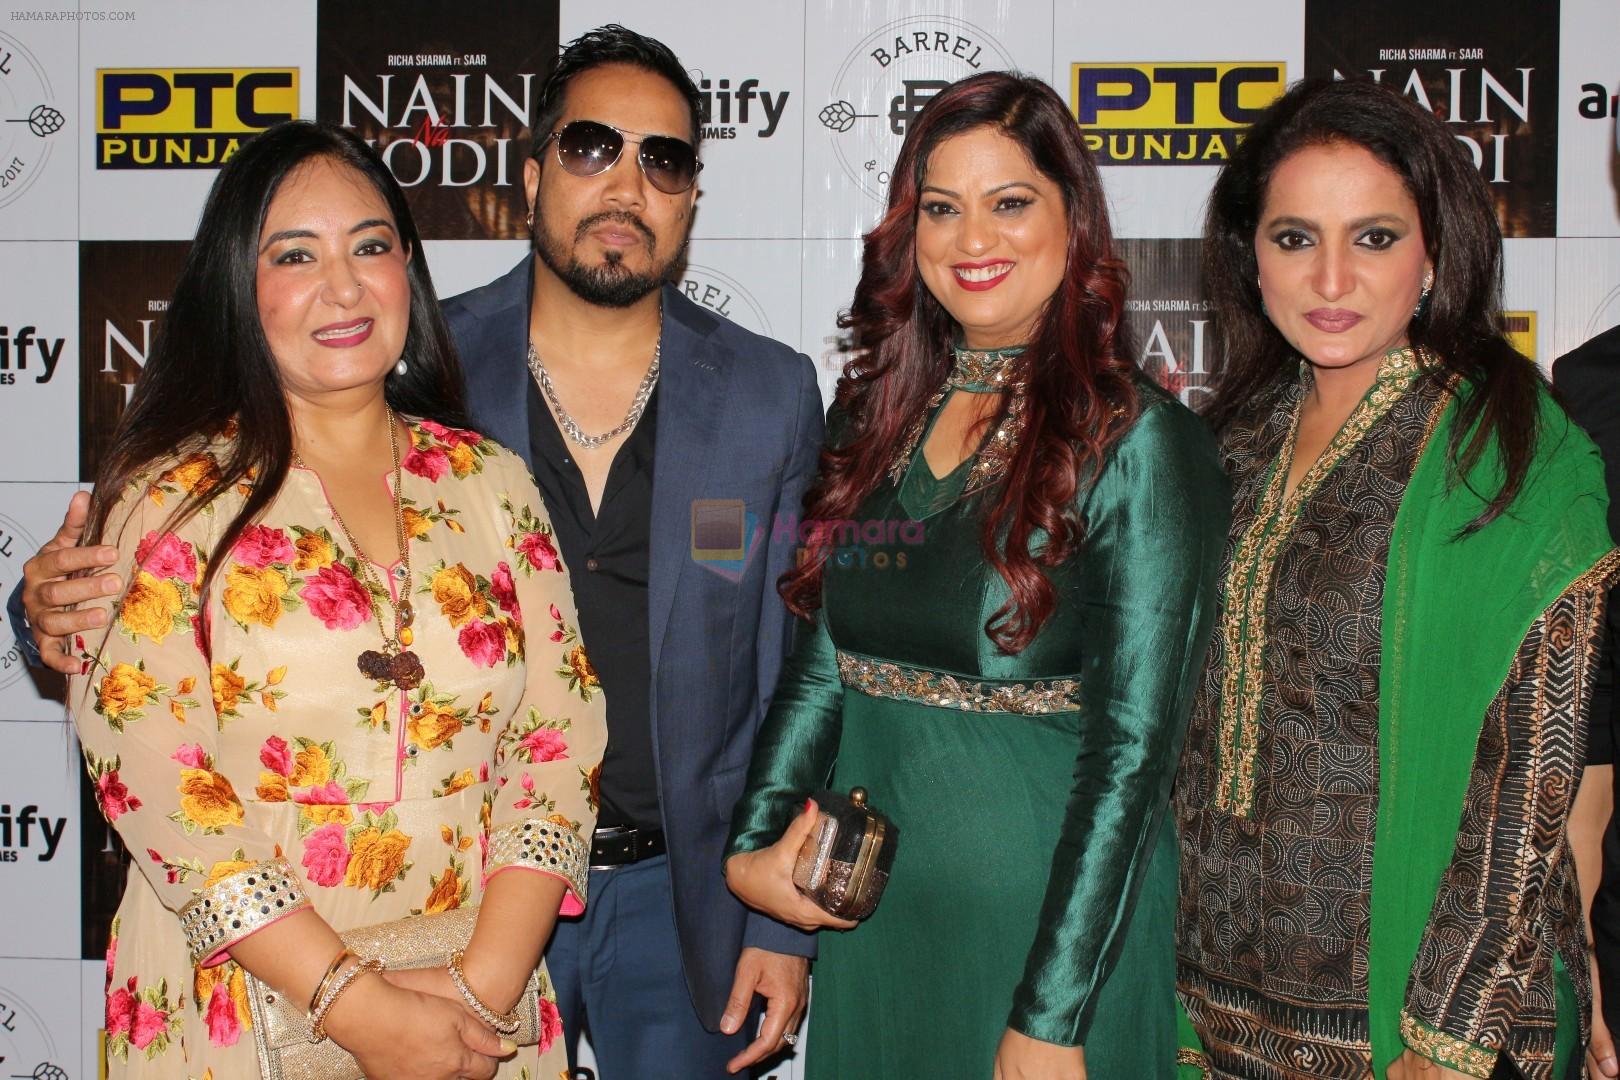 Jaspinder Narula, Mika Singh, Richa Sharma, Durga Jasraj at the Music Launch Of Nain Na Jodi on 25th Sept 2017